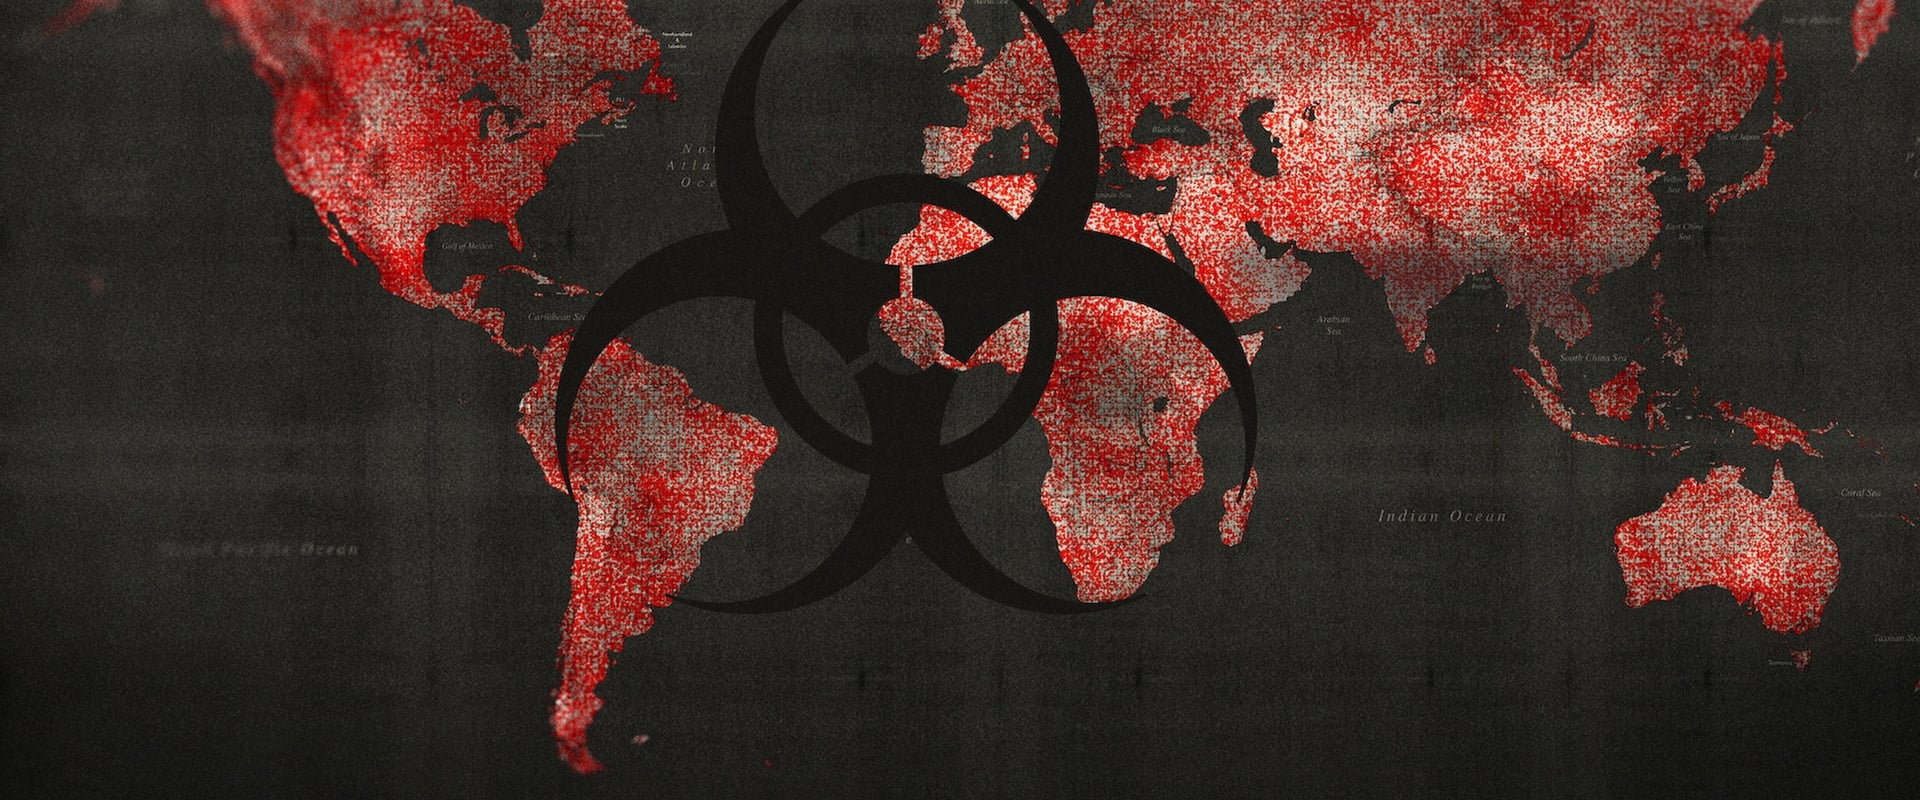 Pandemia: Miten estää leviäminen